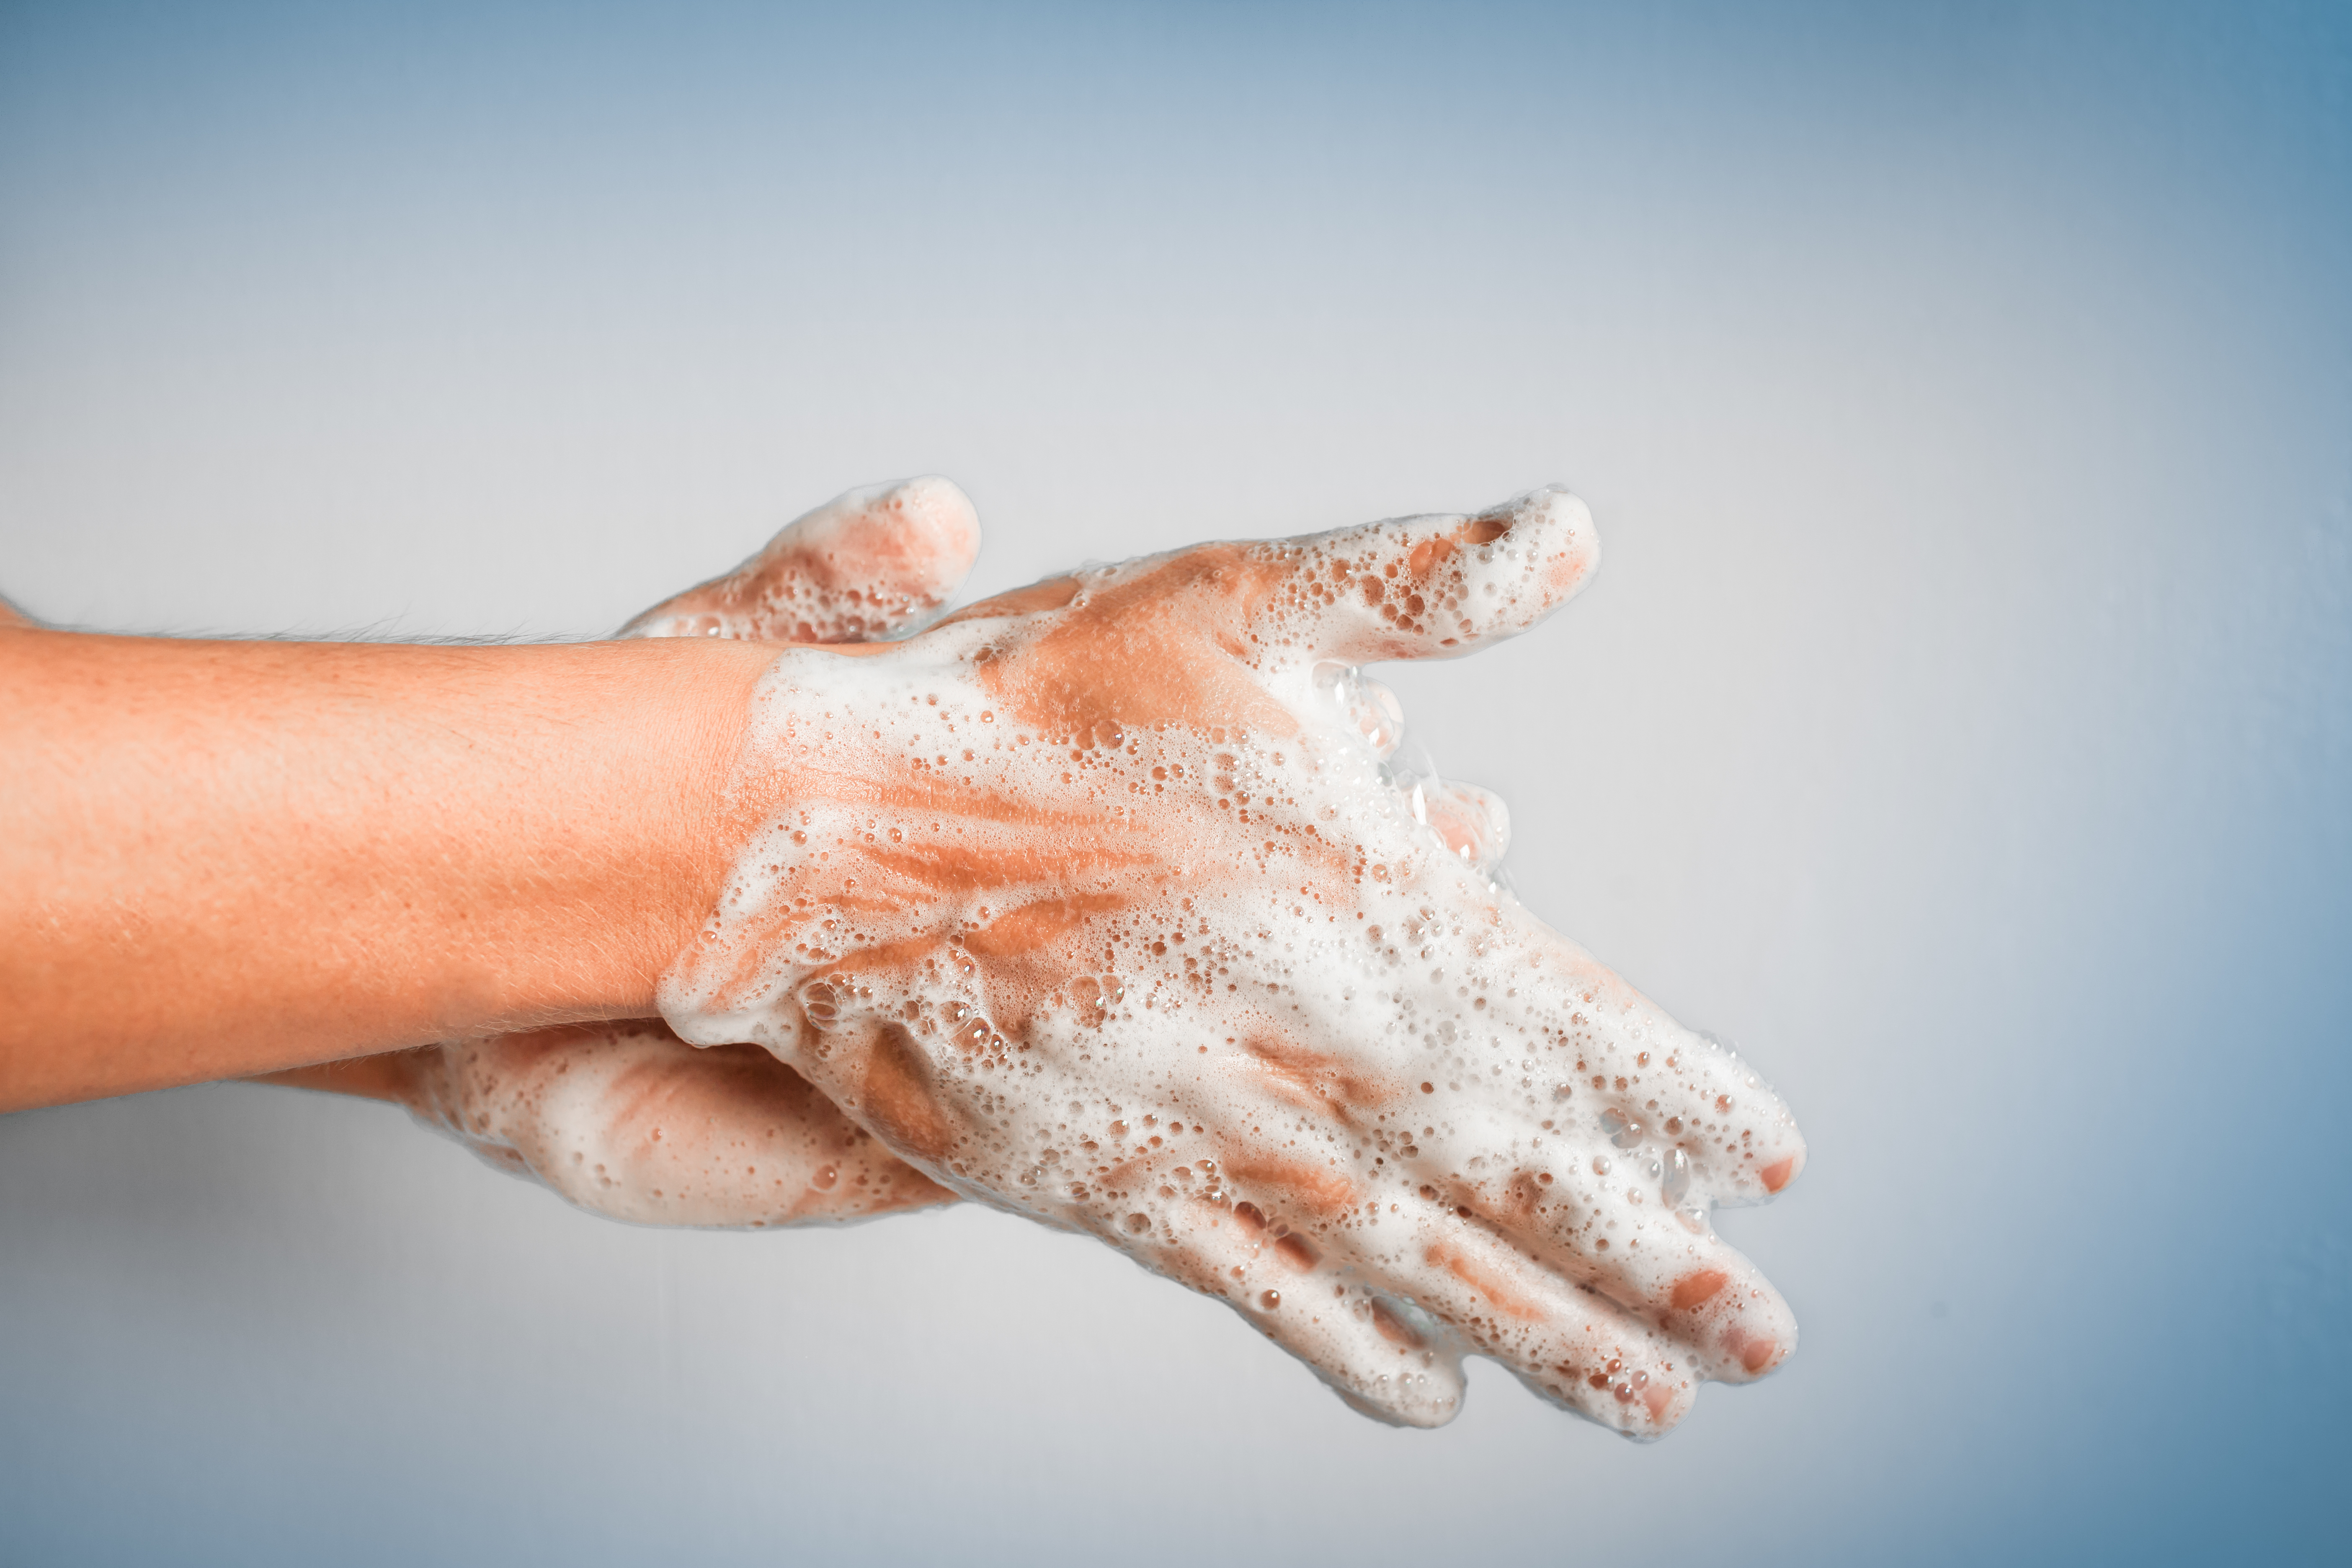 3 Reasons Why Handwashing Should Matter to You, Blogs